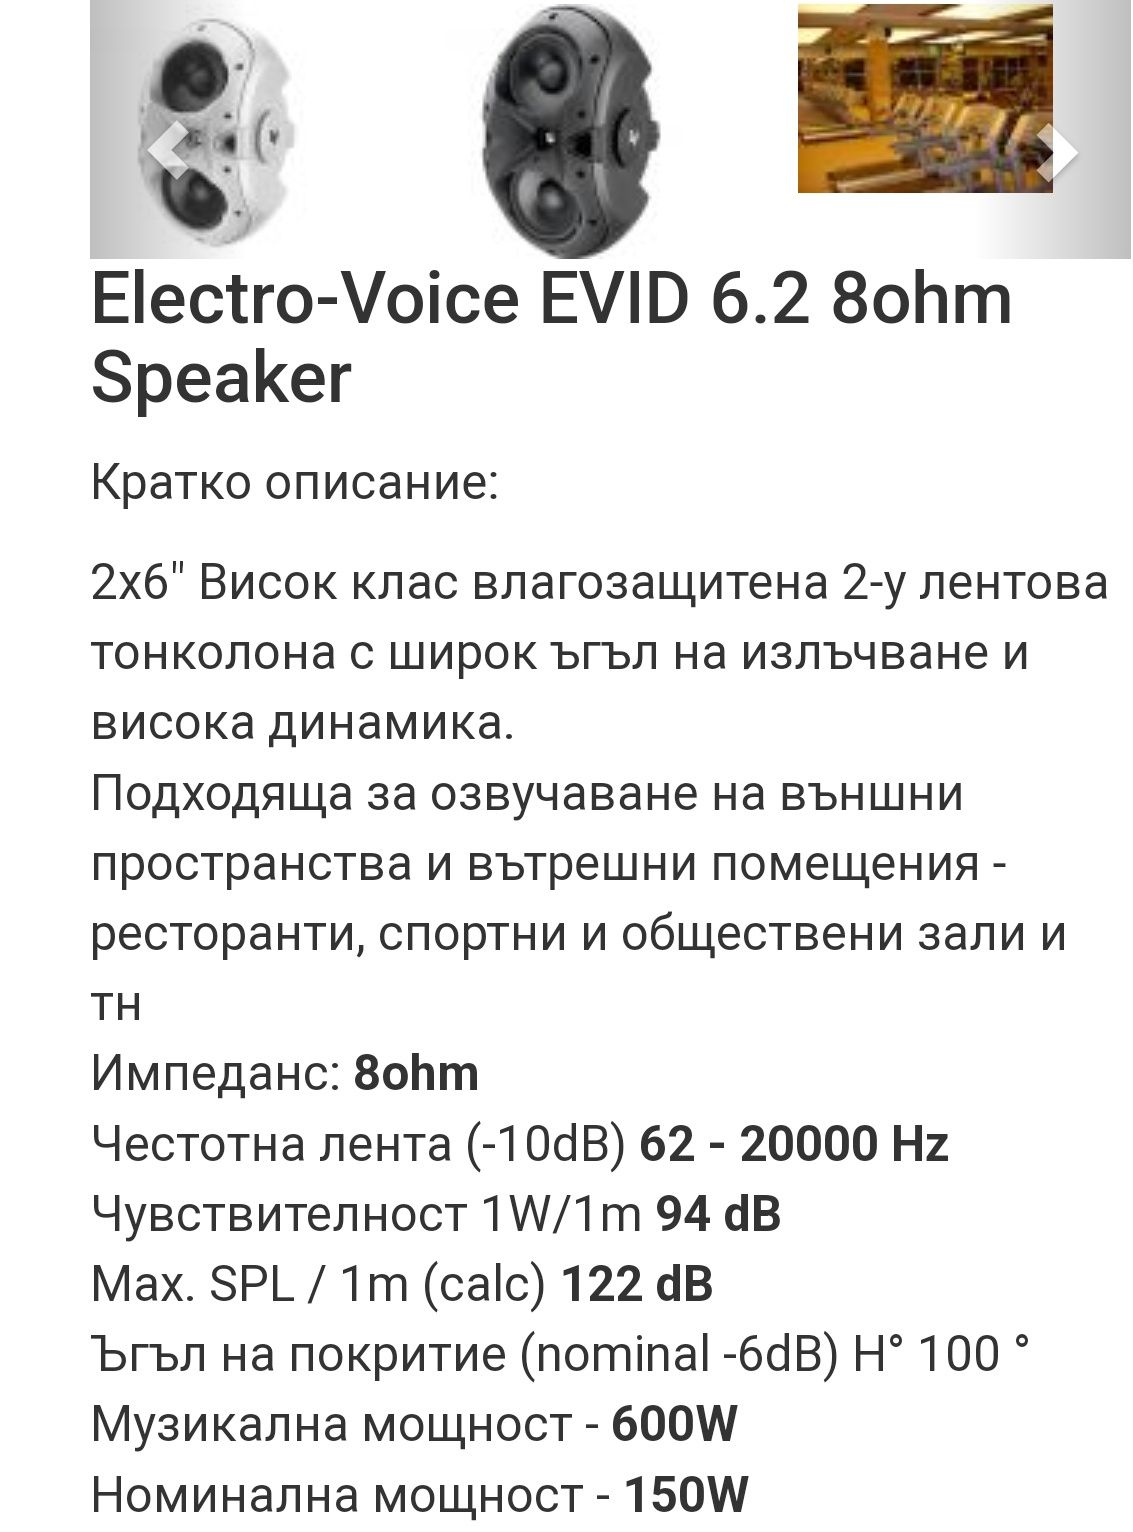 Тонколони Electro voice  Evid 6.2